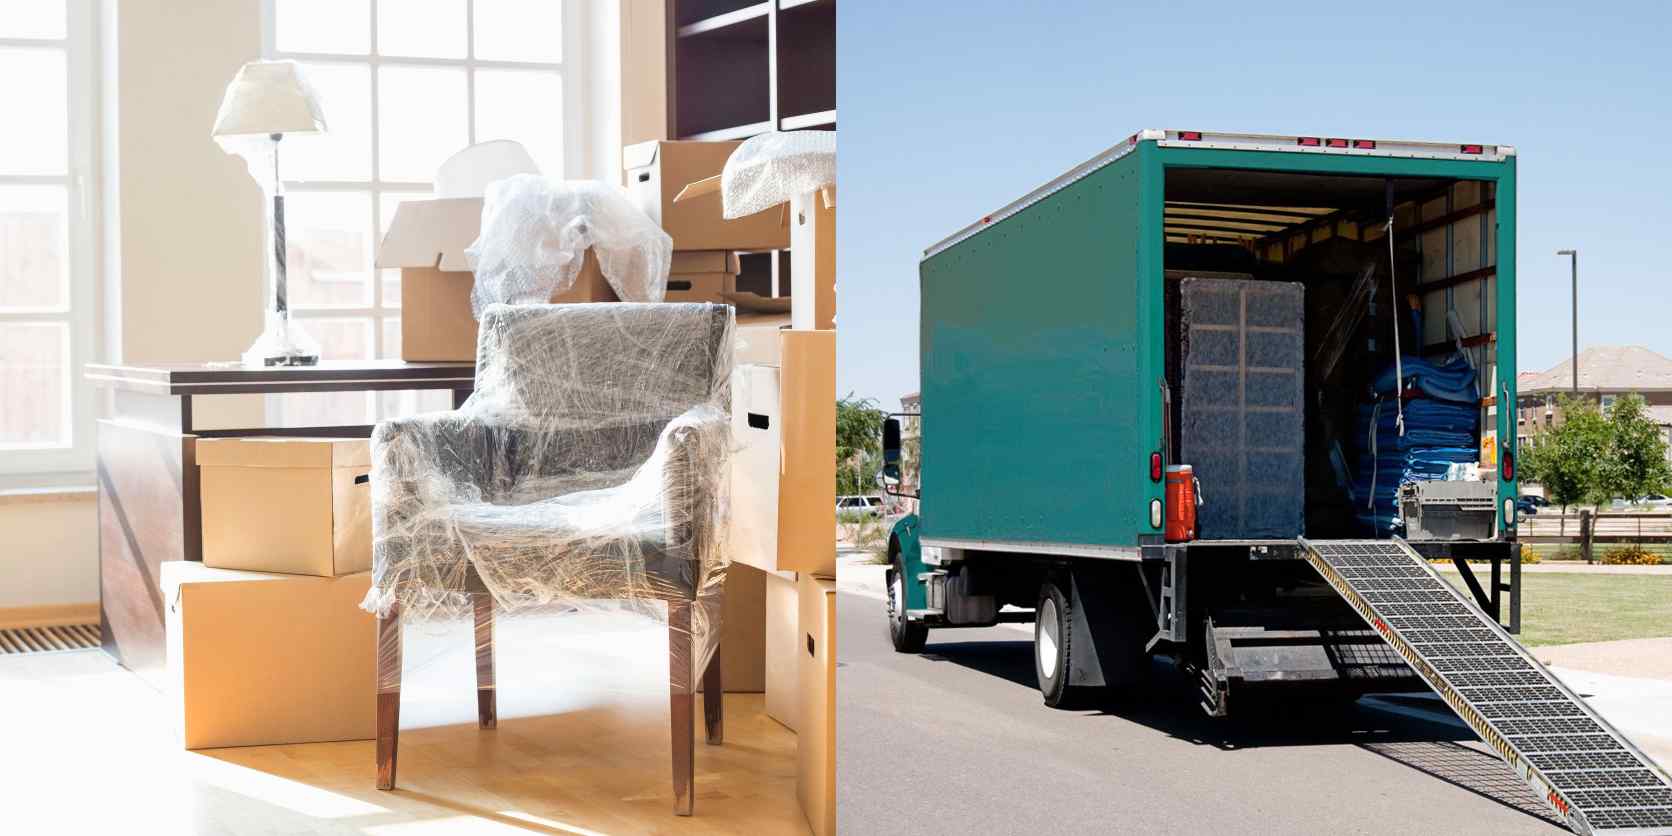 Möbel, eingeschlagen in Emballagen, Umzugskartons; LKW mit Rampe